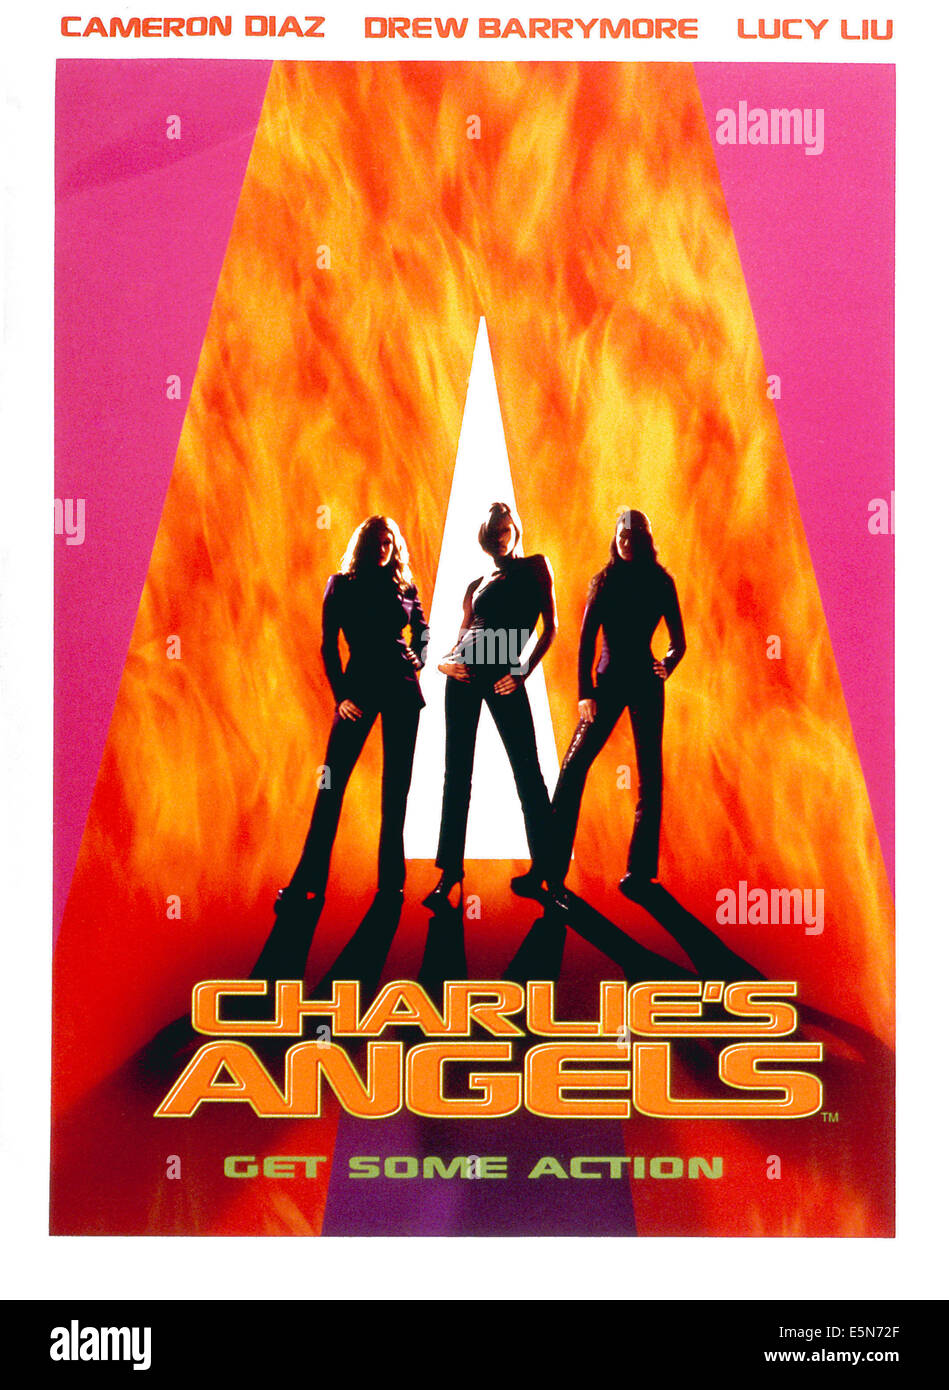 CHARLIE'S ANGELS, 2000, (c)Columbia Pictures/avec la permission d'Everett Collection Banque D'Images